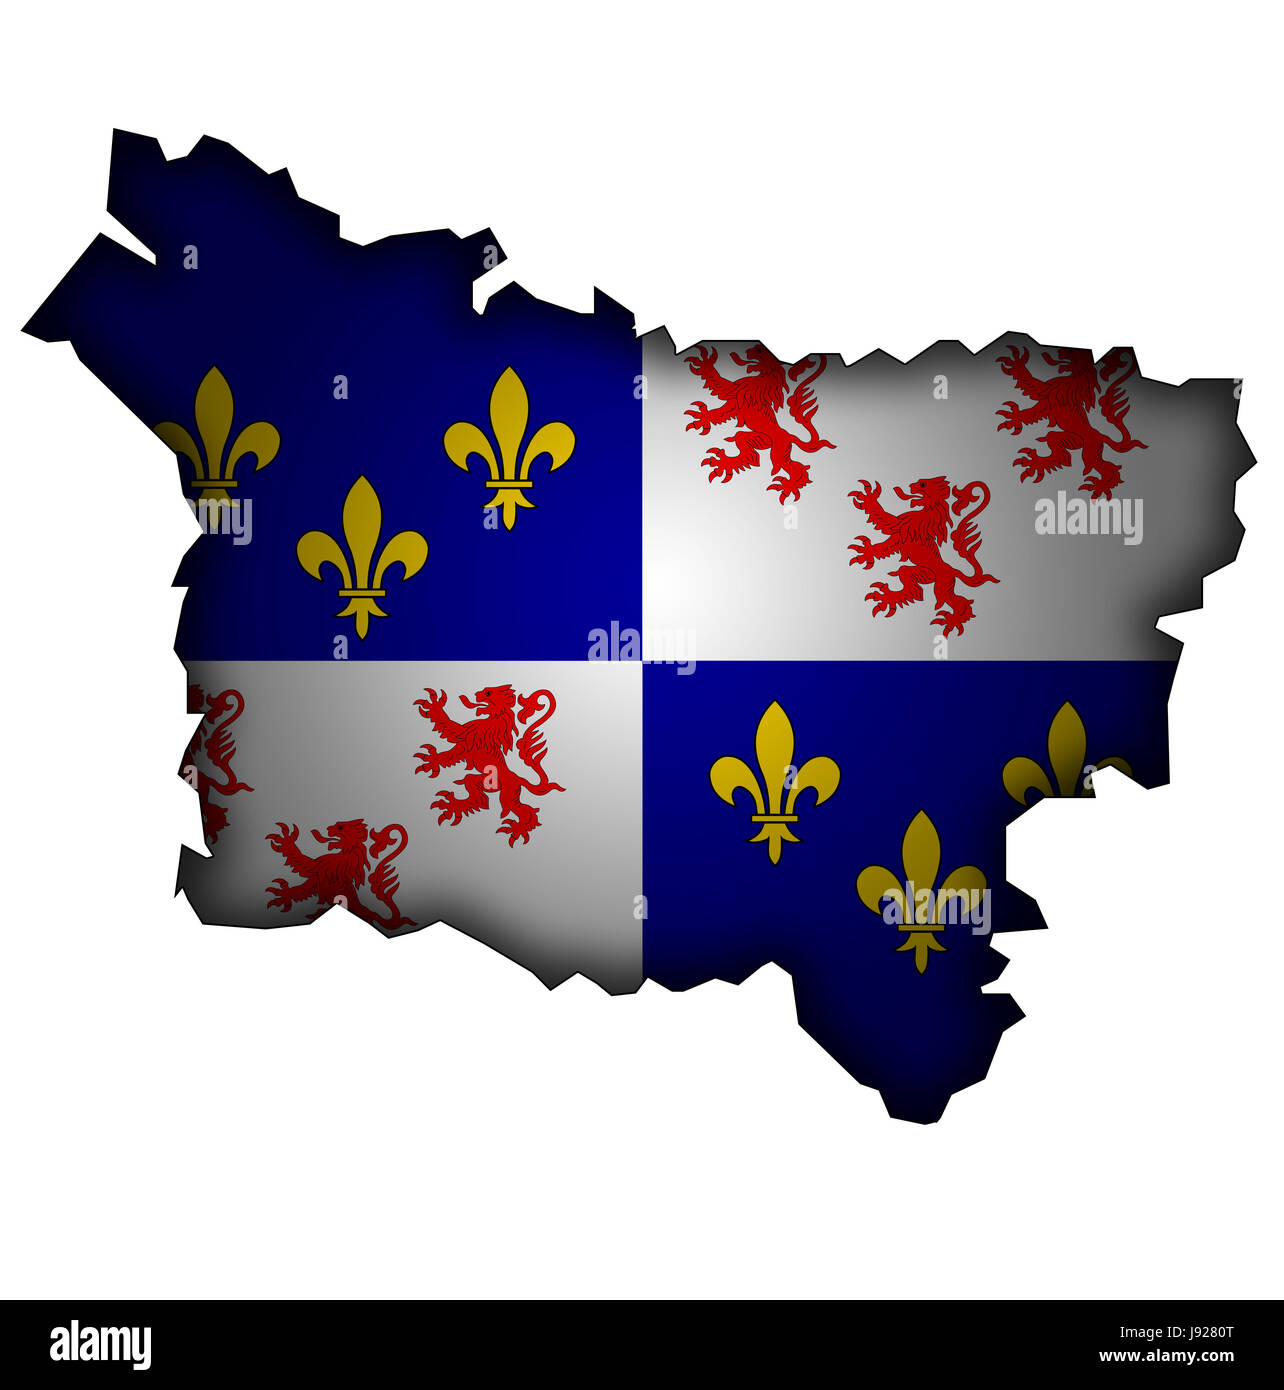 Isolés, emblème, l'Europe, affiche, illustration, France, drapeau, Rusty, national, Banque D'Images